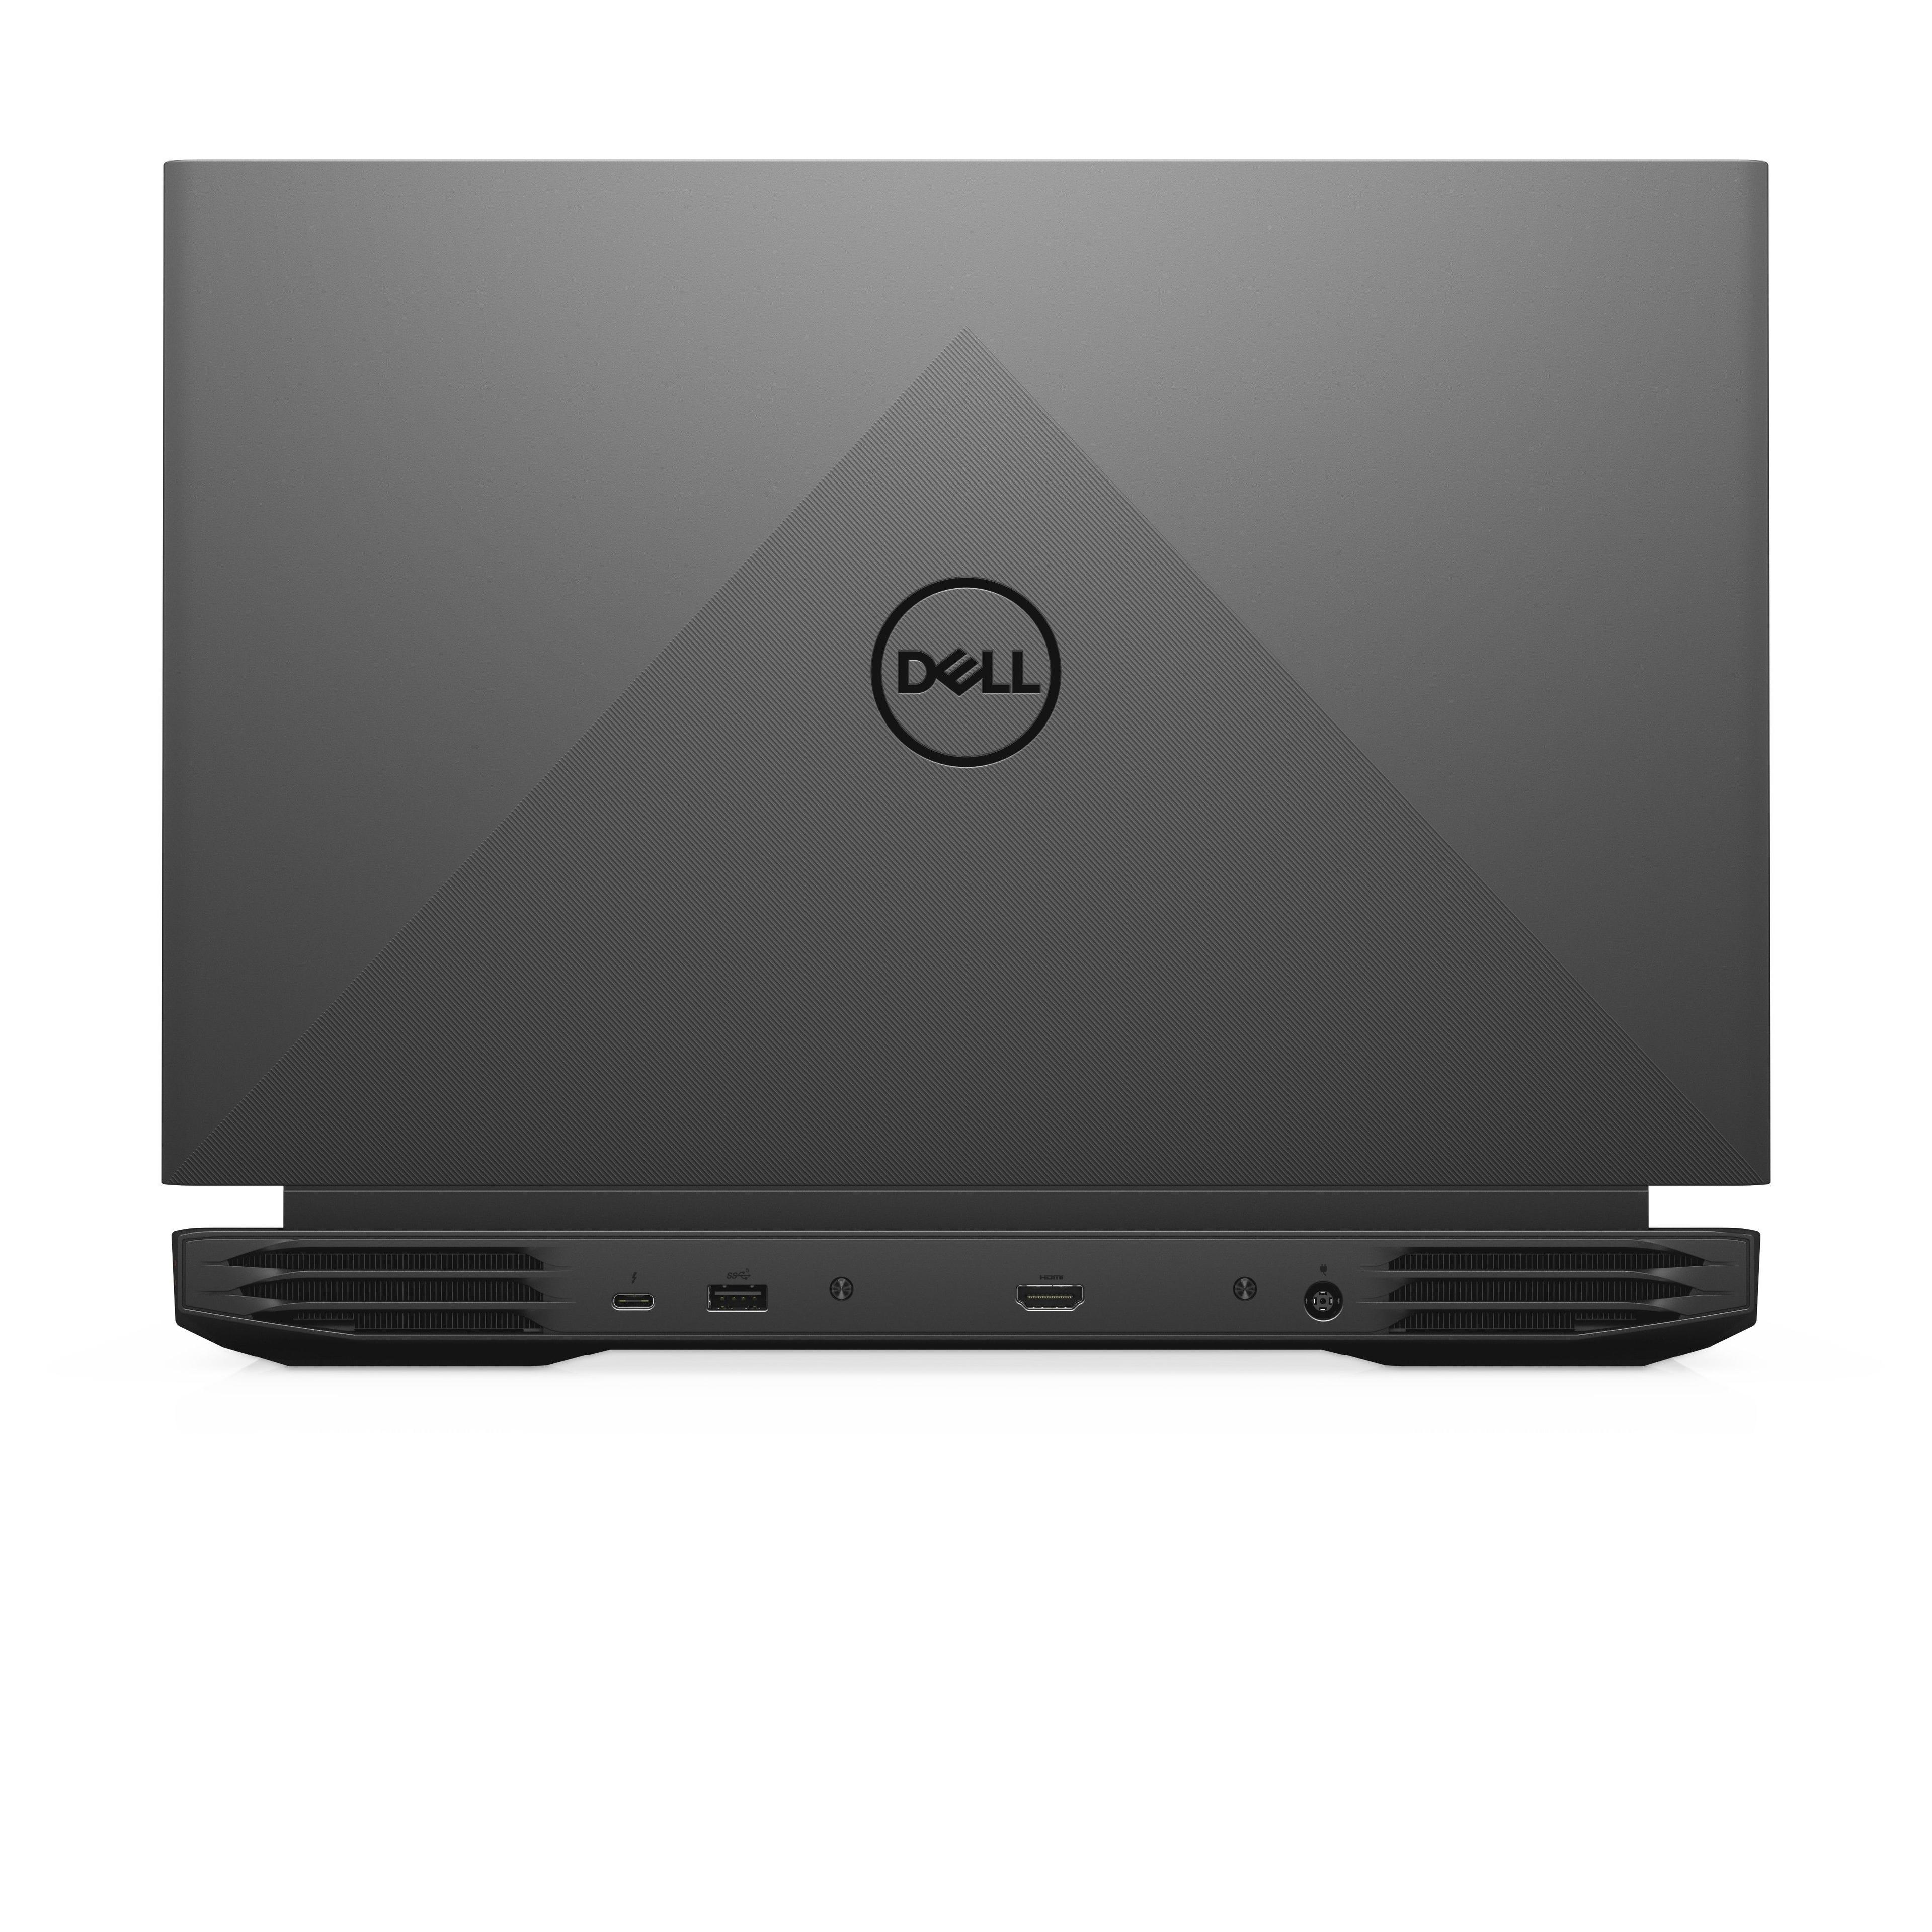 Dell G15-5510102008256DX i5-10200H 15.6"FHD 8GB DDR4 SSD256 BT BLKB GeForce GTX 1650_4GB Win10 Dark Shadow Grey (REPACK) 2Y